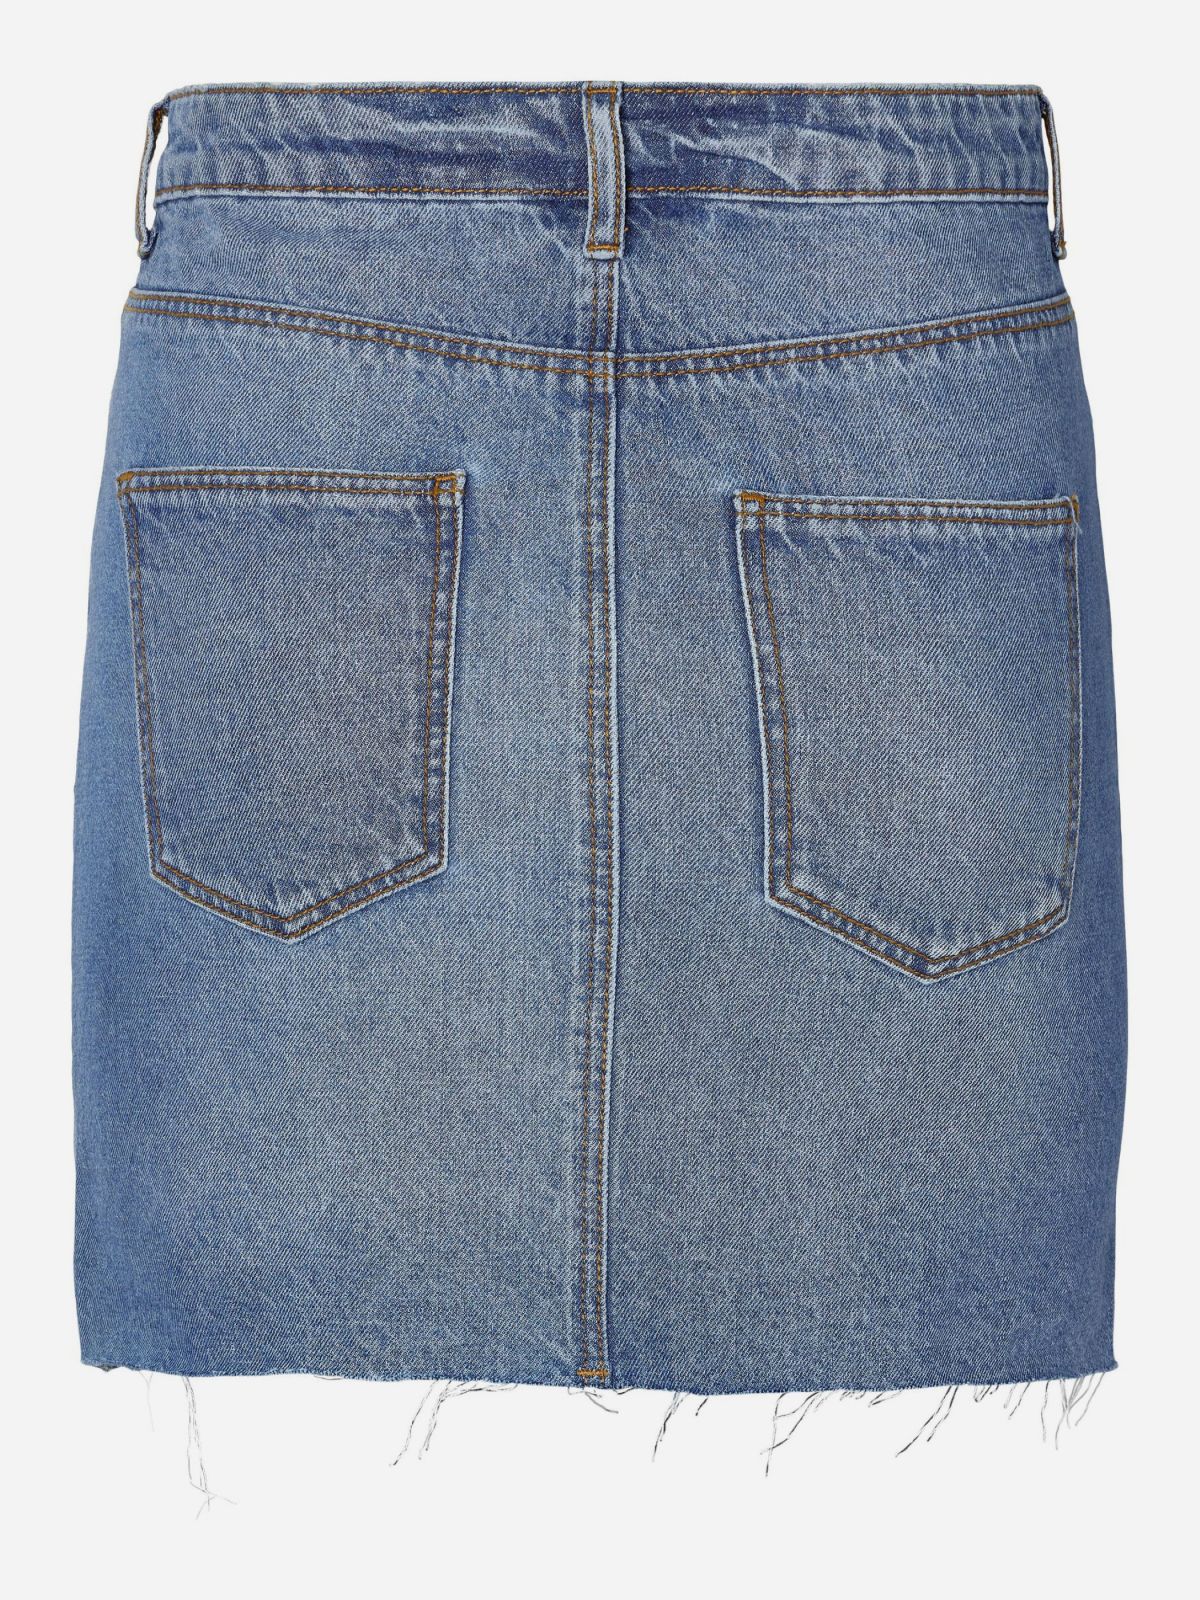  חצאית מיני ג'ינס / נשים של NOISY MAY